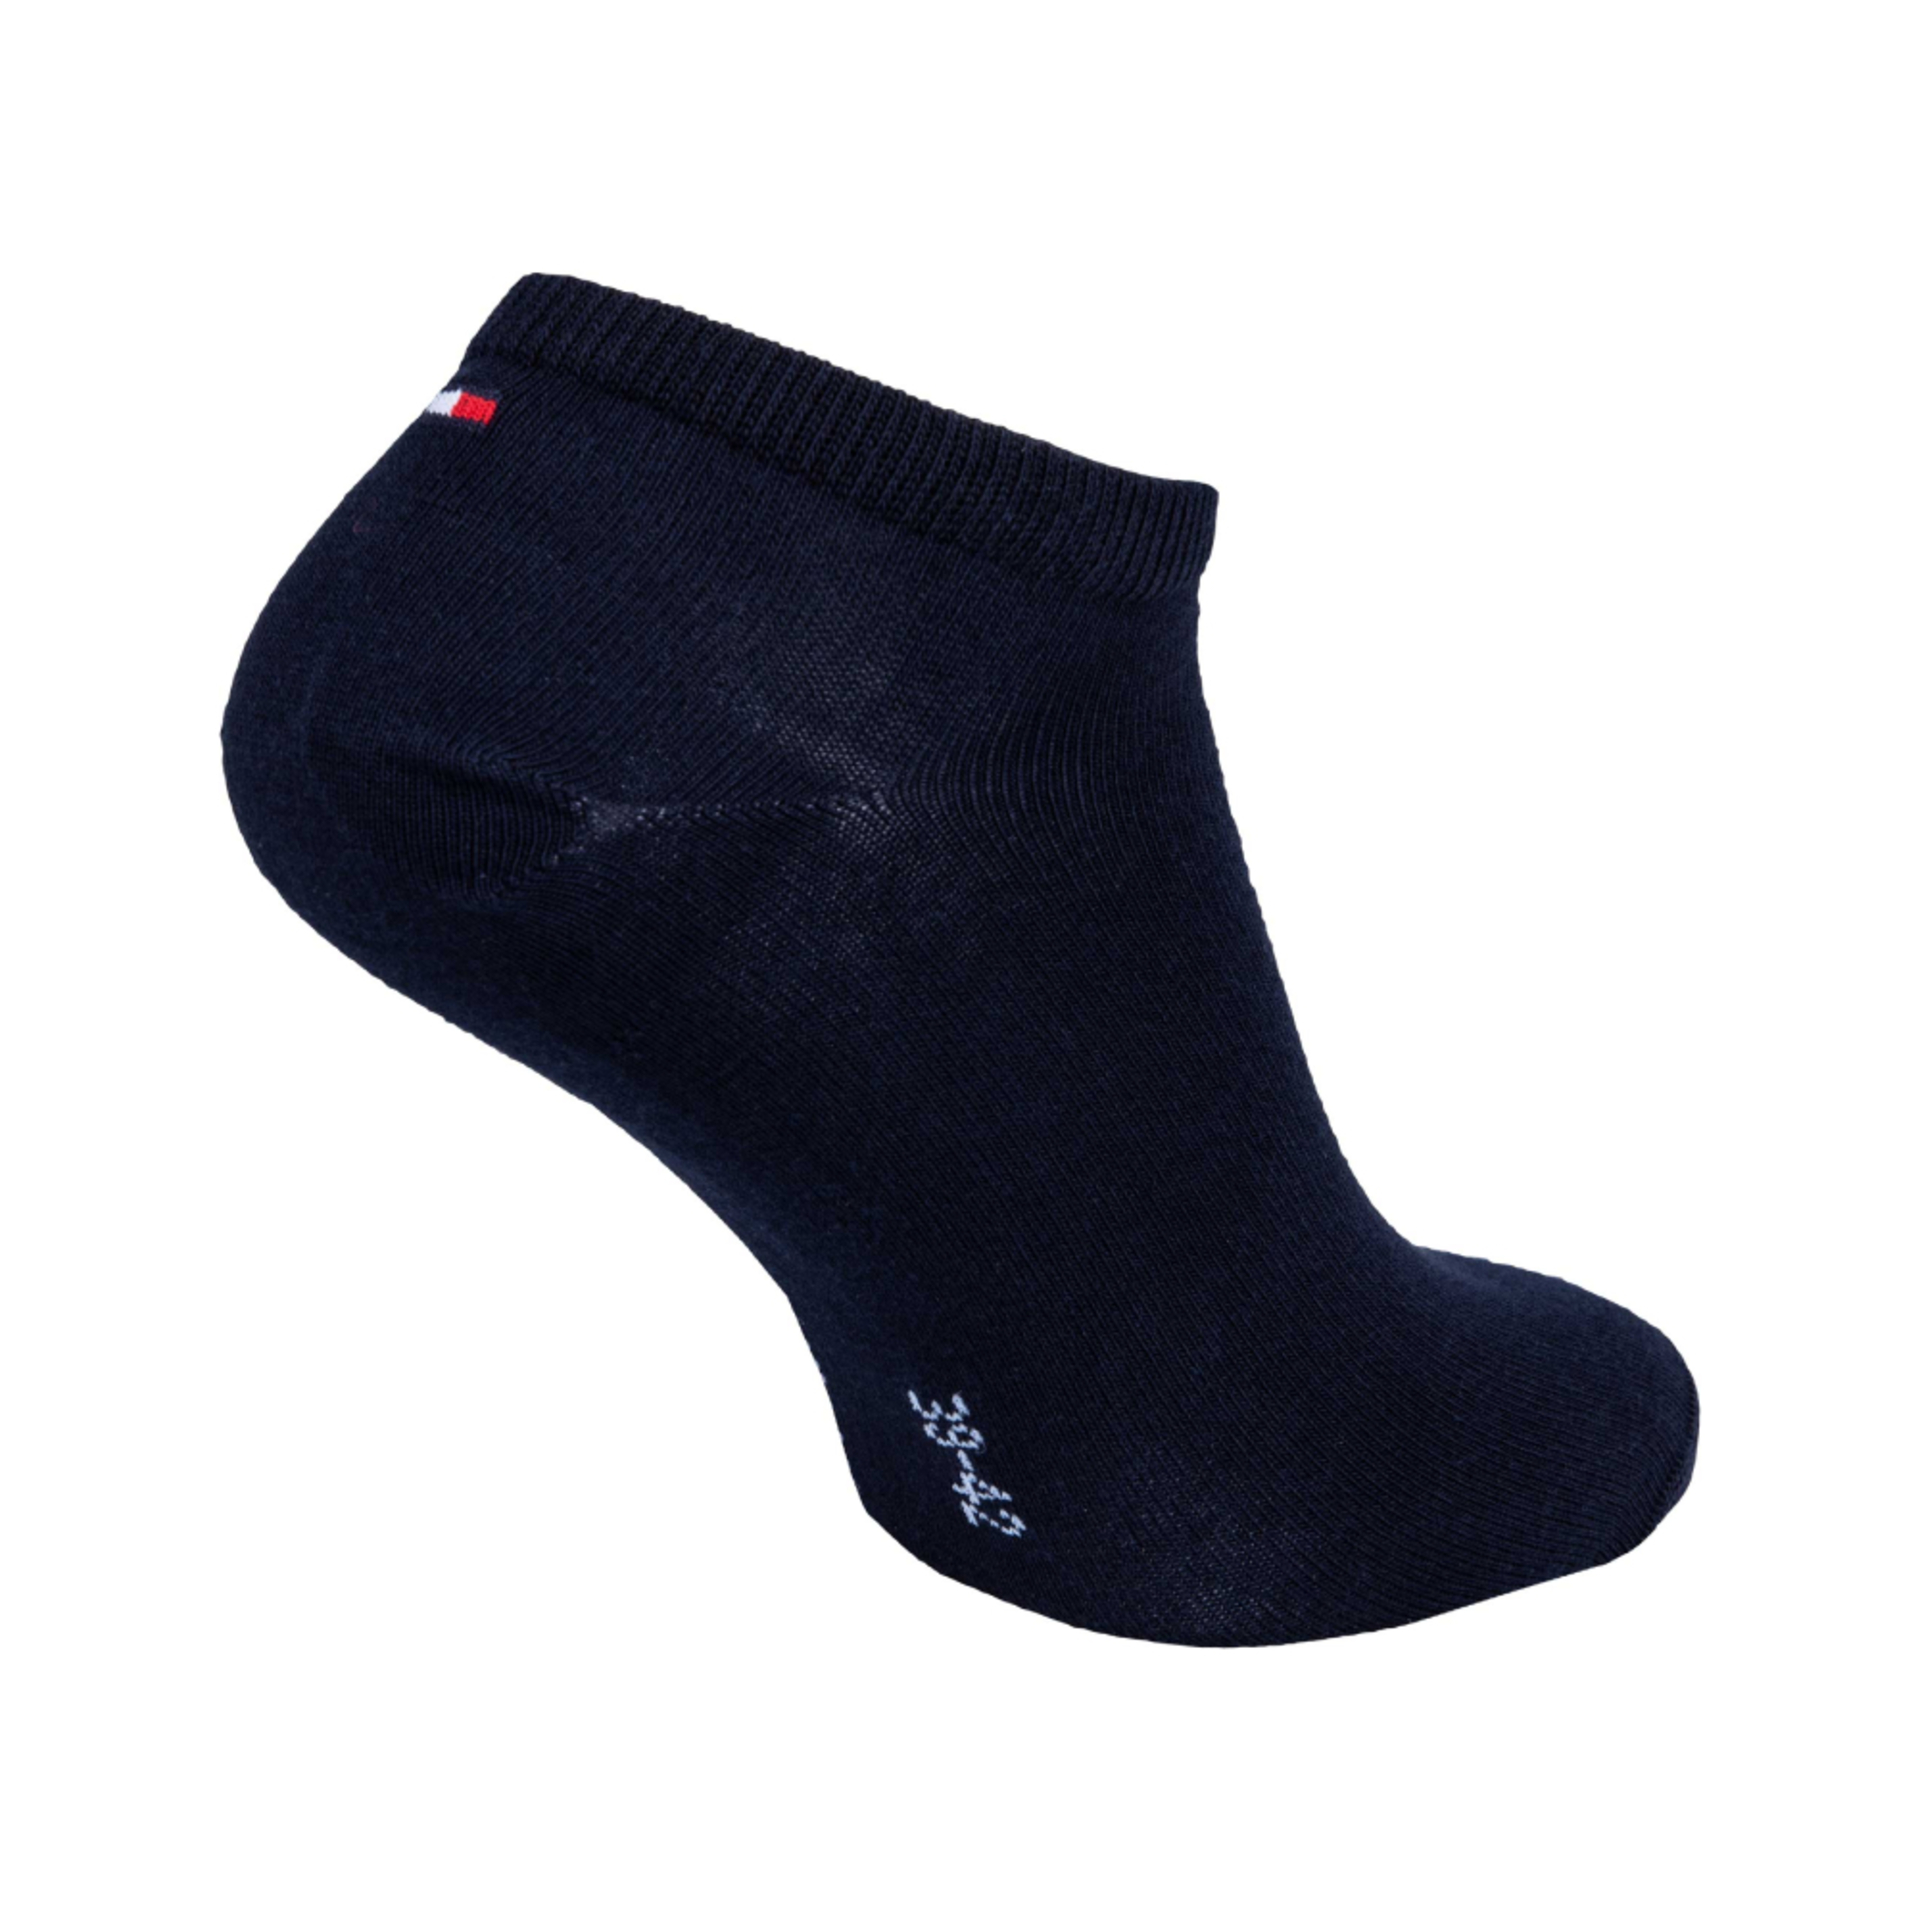 Tommy Hilfiger pánske čierne ponožky 2 pack - 43-46 (200)